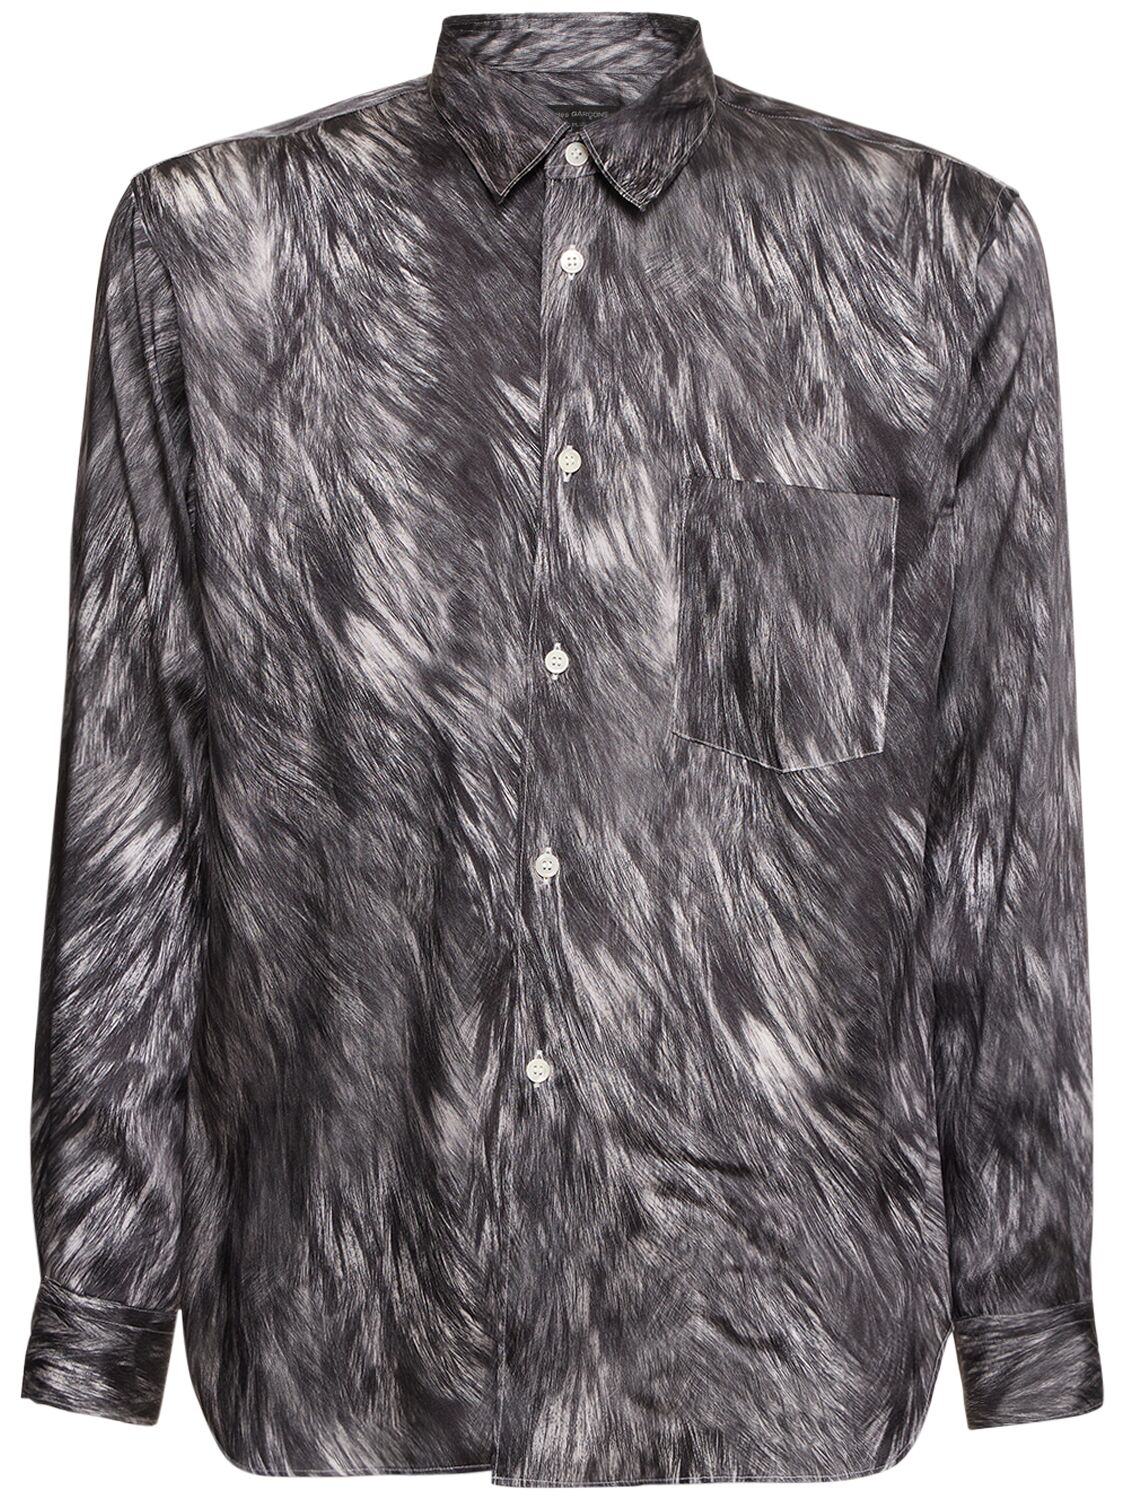 Image of Fur Pattern Printed Shirt